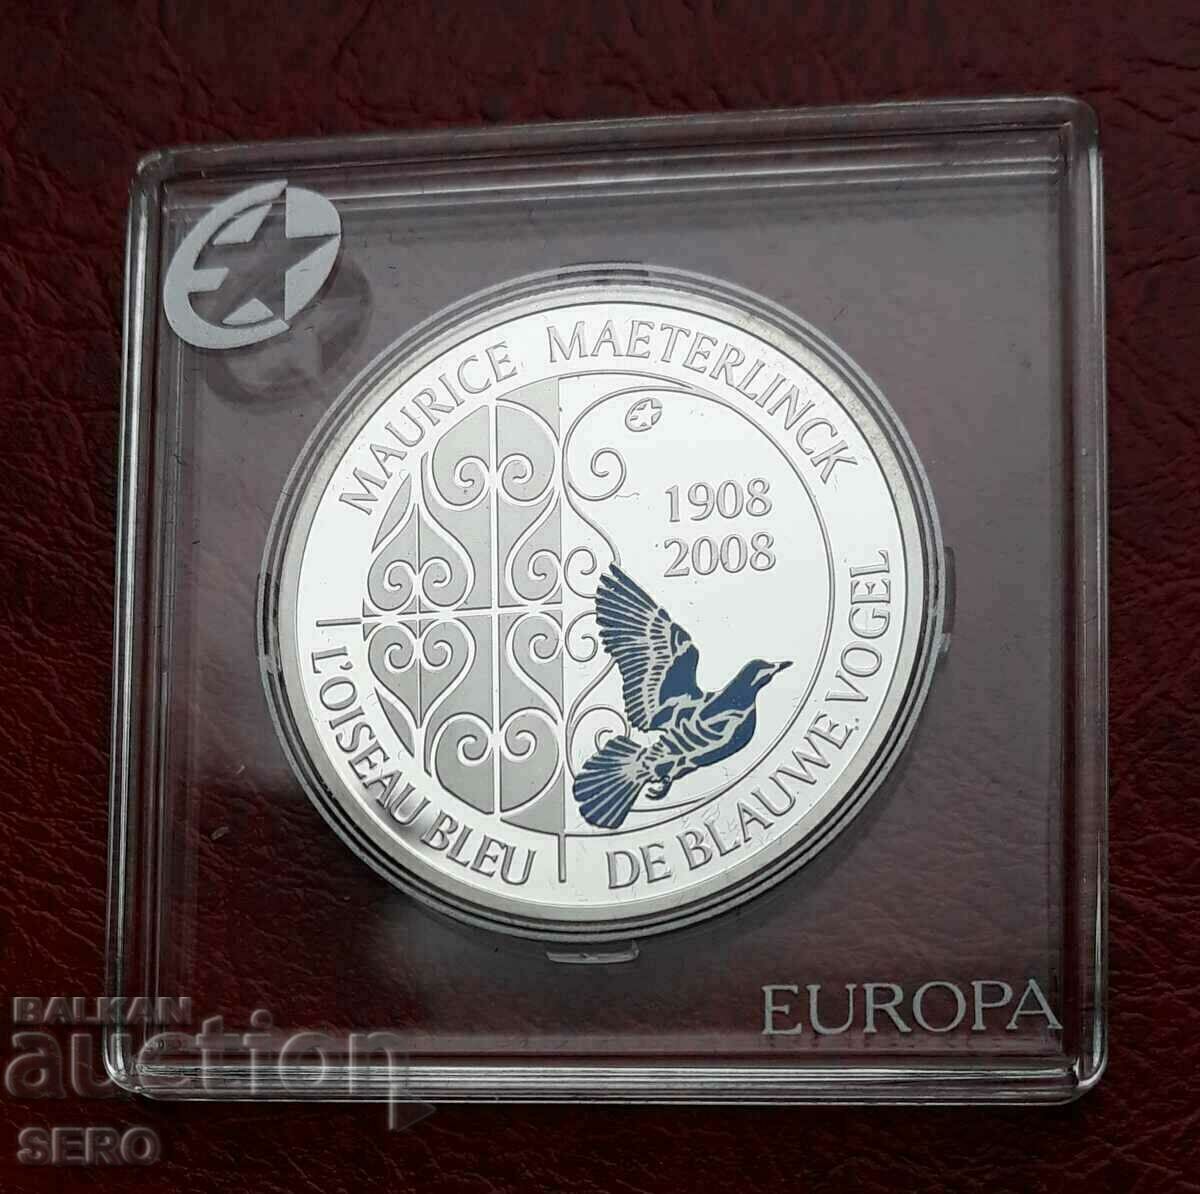 Βέλγιο-10 ευρώ 2008-ασημί σε ωραία κάψουλα-πολύ σπάνιο